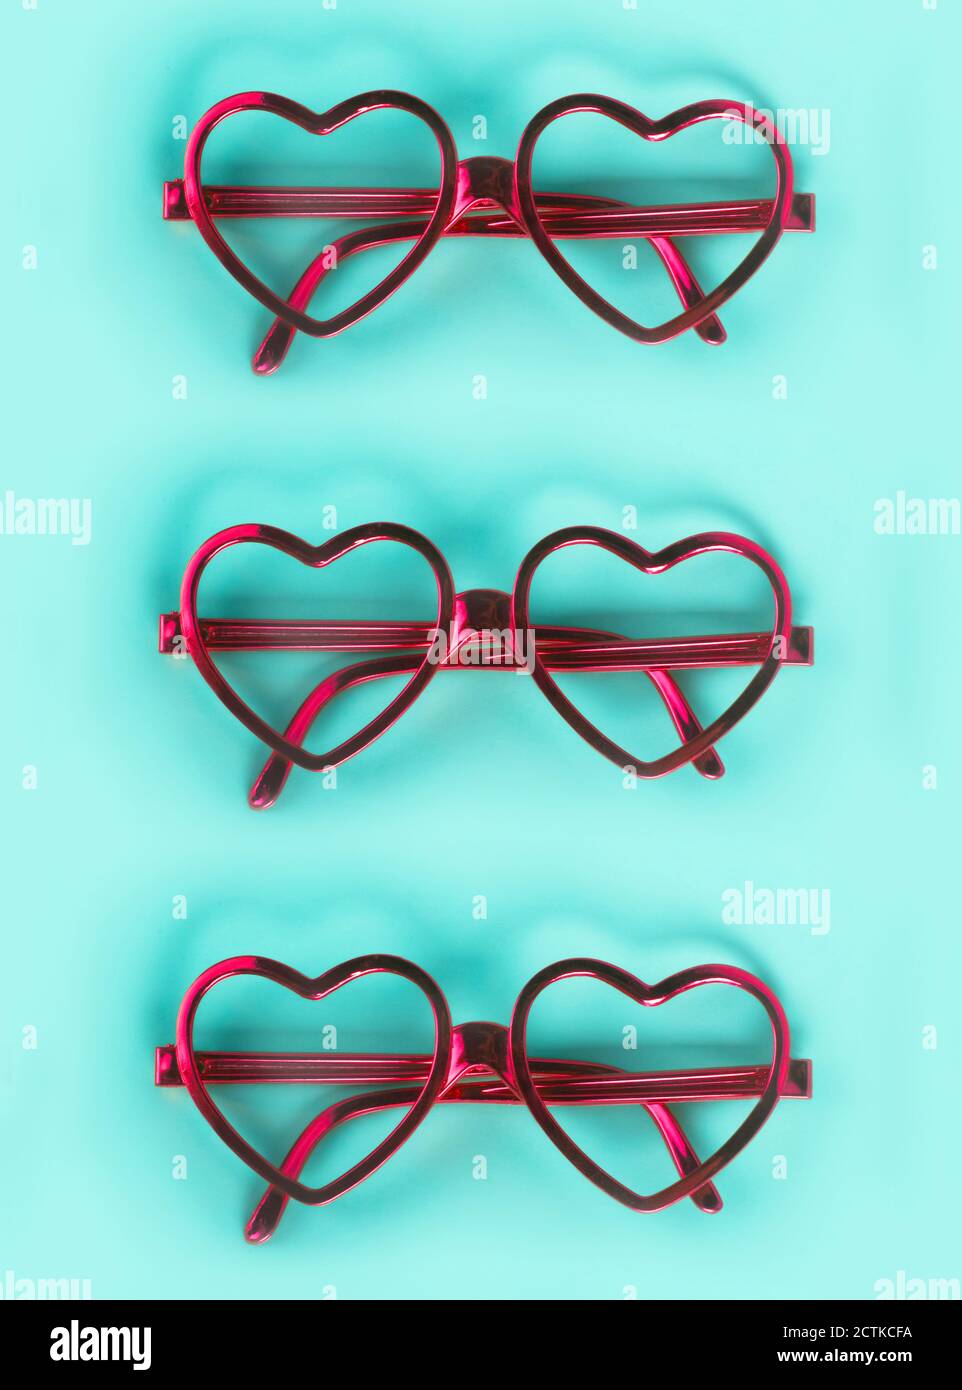 Gros plan de lunettes en forme de coeur rose disposées sur fond bleu Banque D'Images